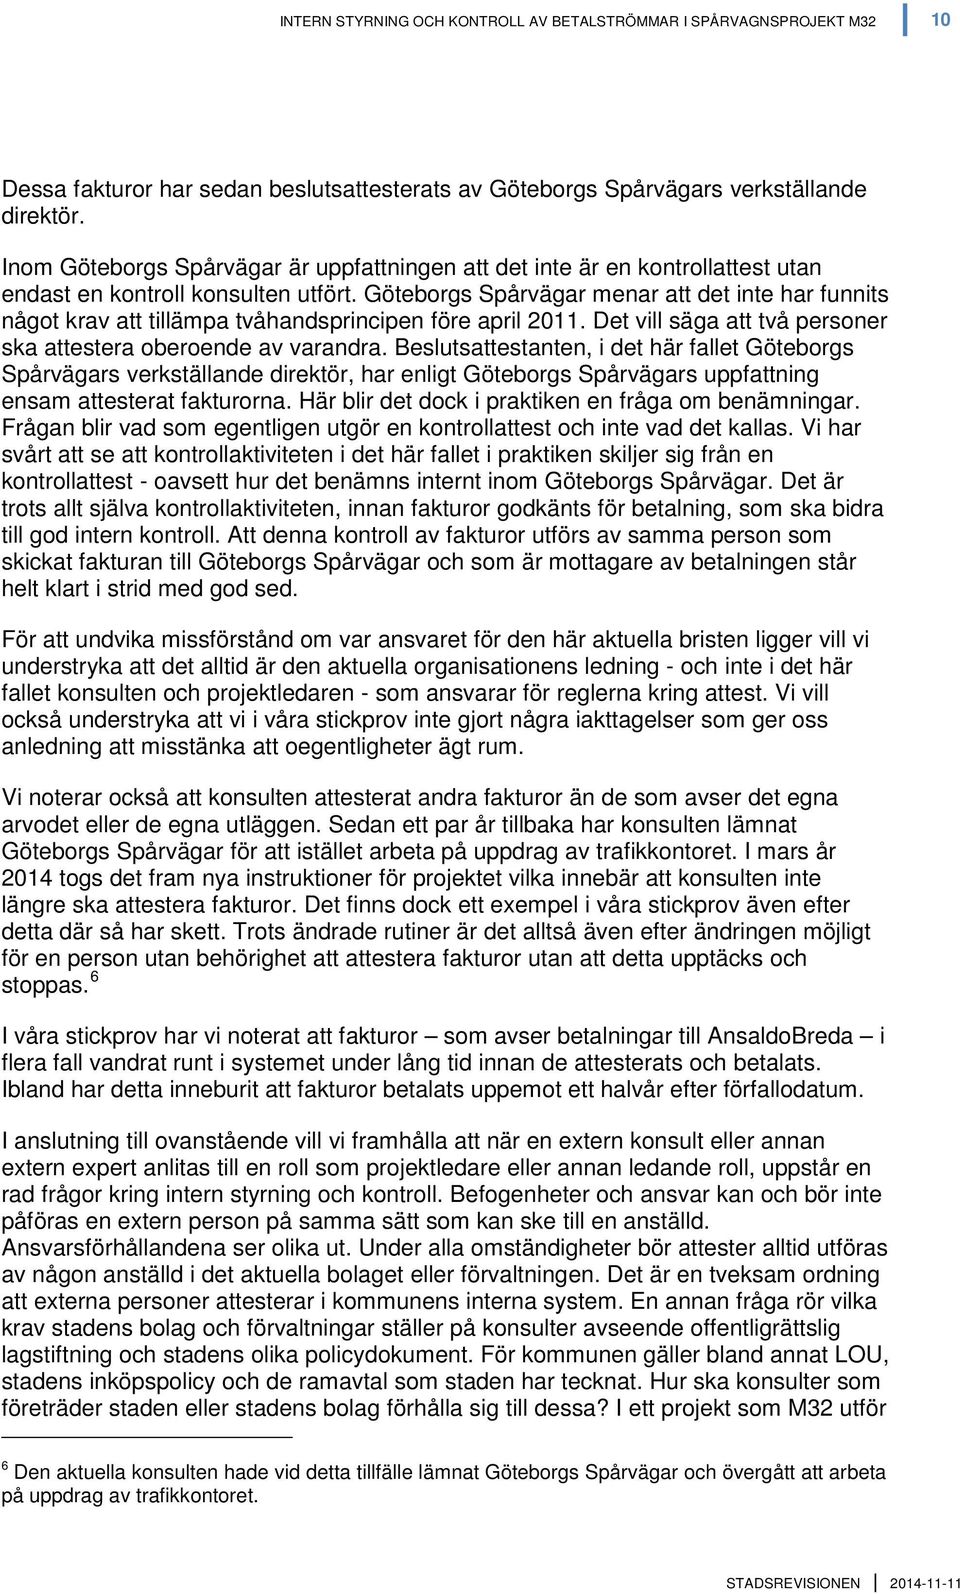 Göteborgs Spårvägar menar att det inte har funnits något krav att tillämpa tvåhandsprincipen före april 2011. Det vill säga att två personer ska attestera oberoende av varandra.